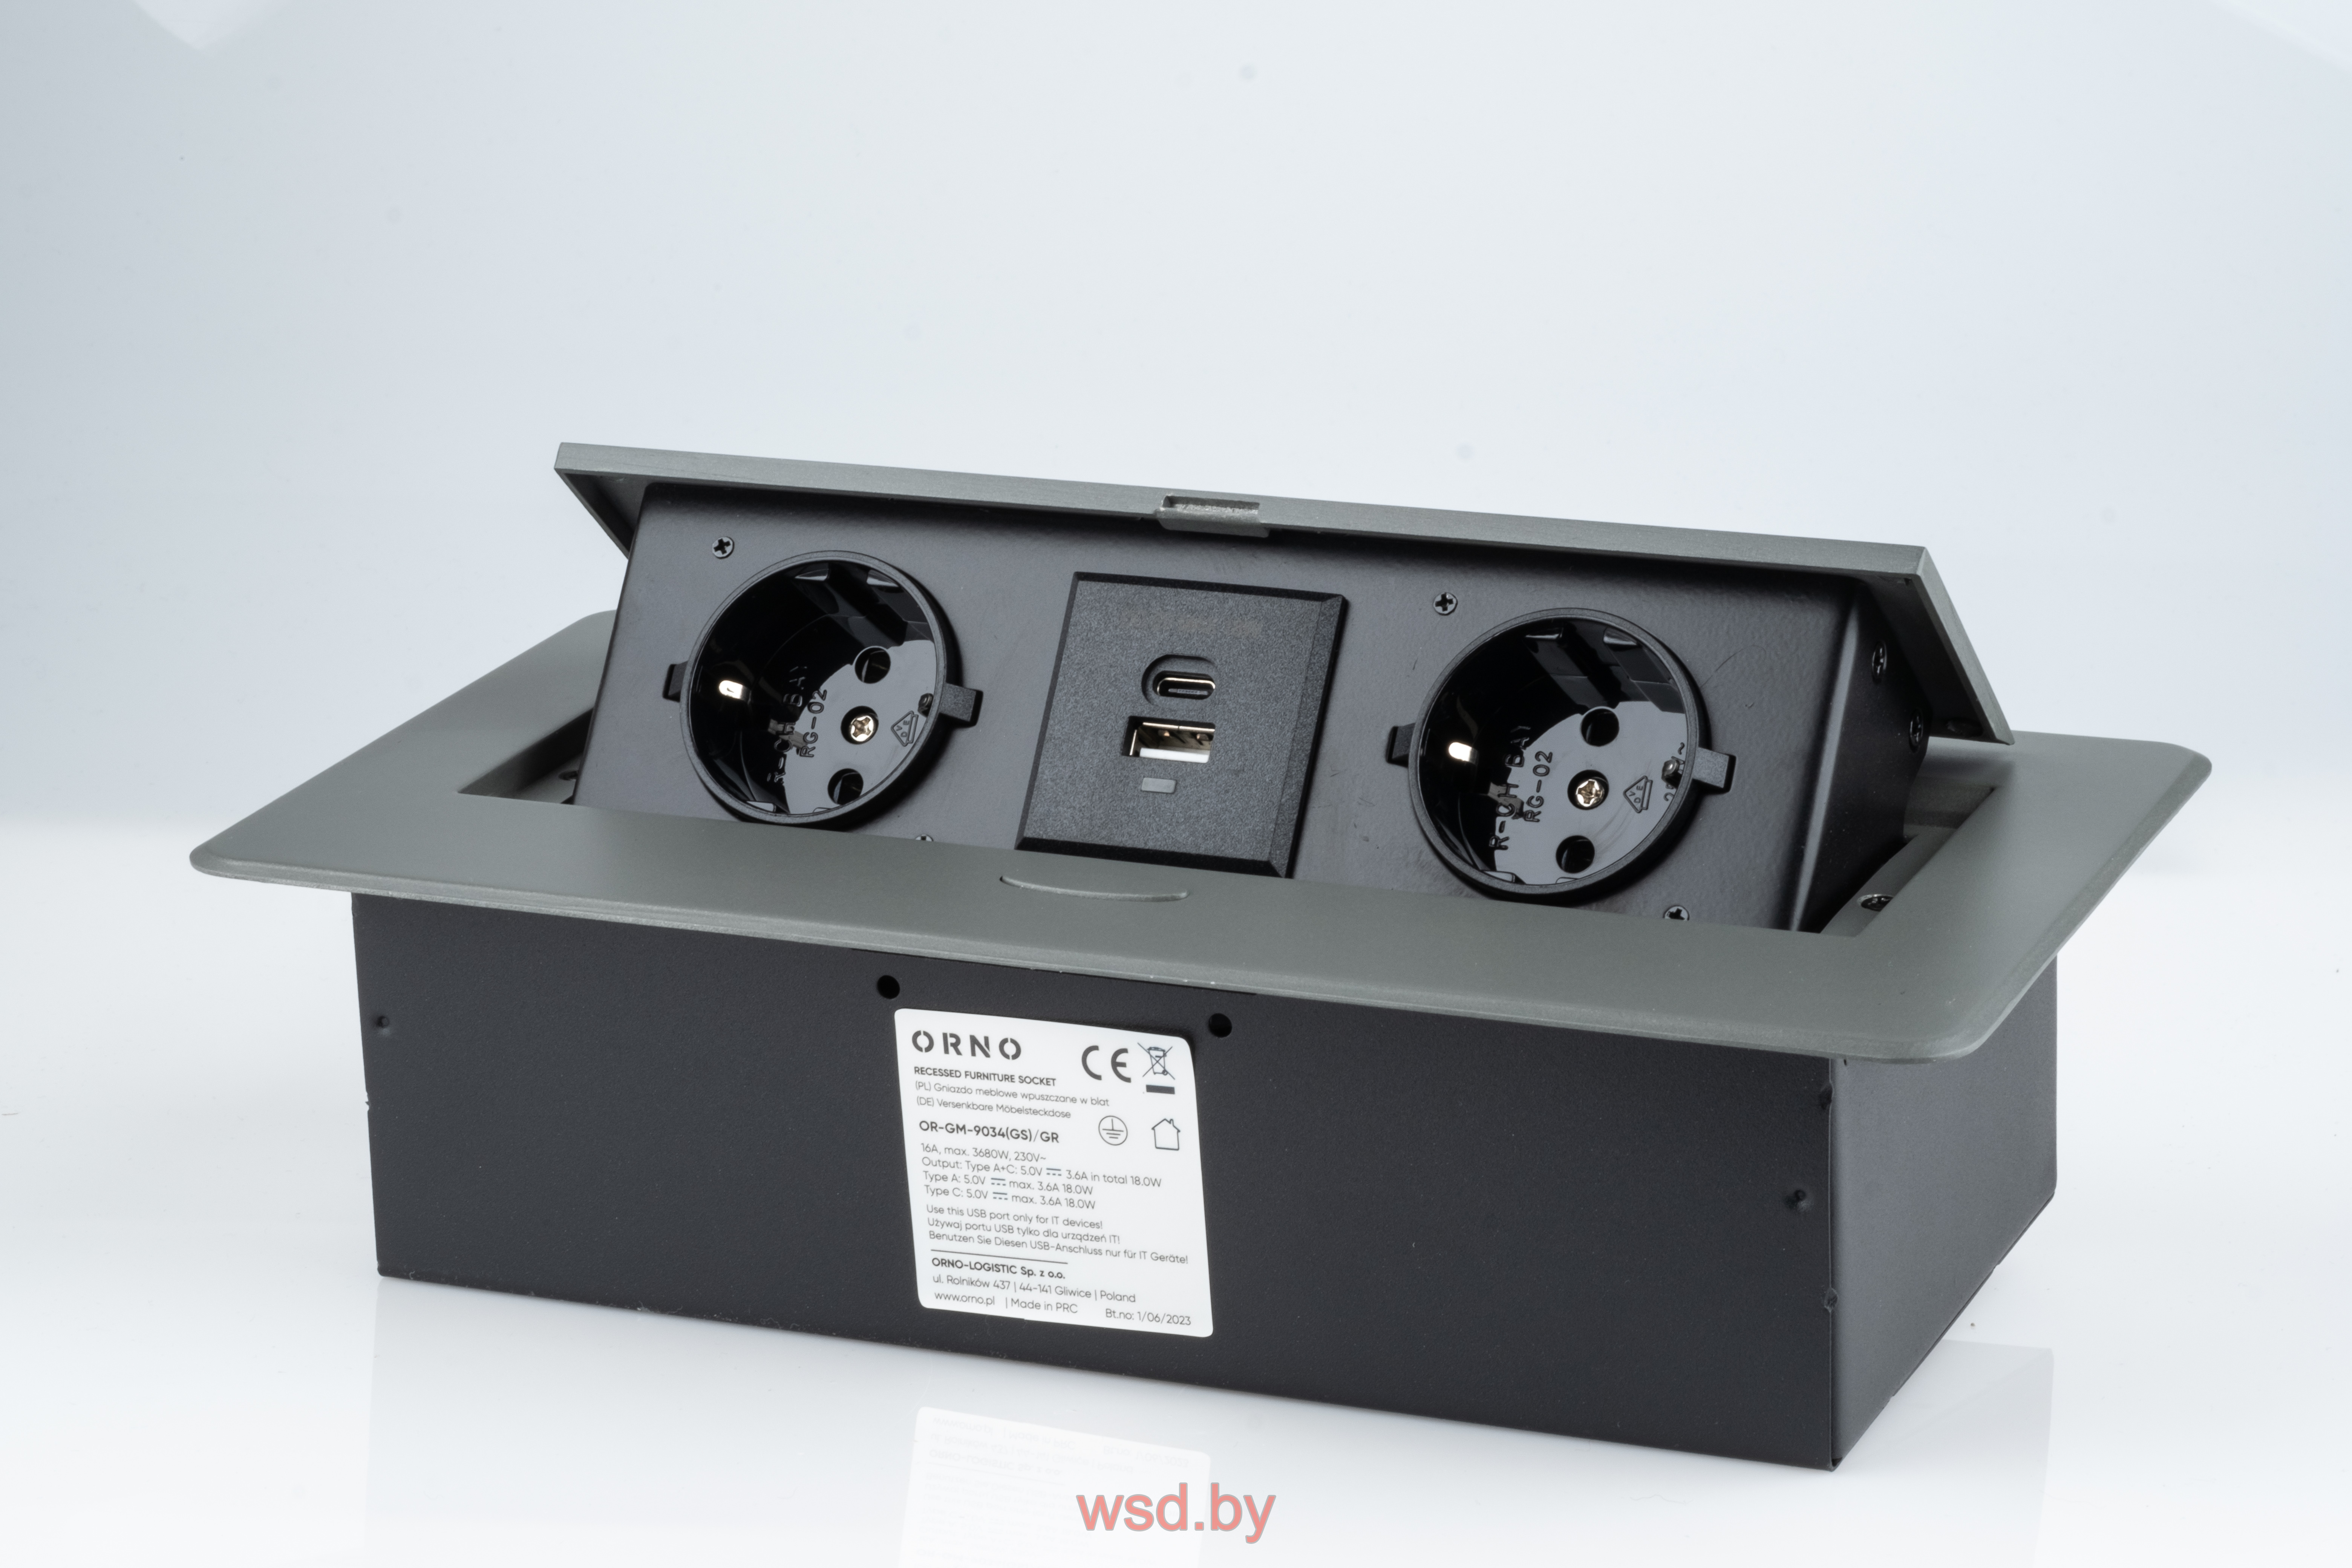 ORNO - Блок розеточный встраиваемый 2хUSB 5V 2,1A + 2x2P+E со шторками, без кабеля, 3600вт, закругленный край 2мм, графит